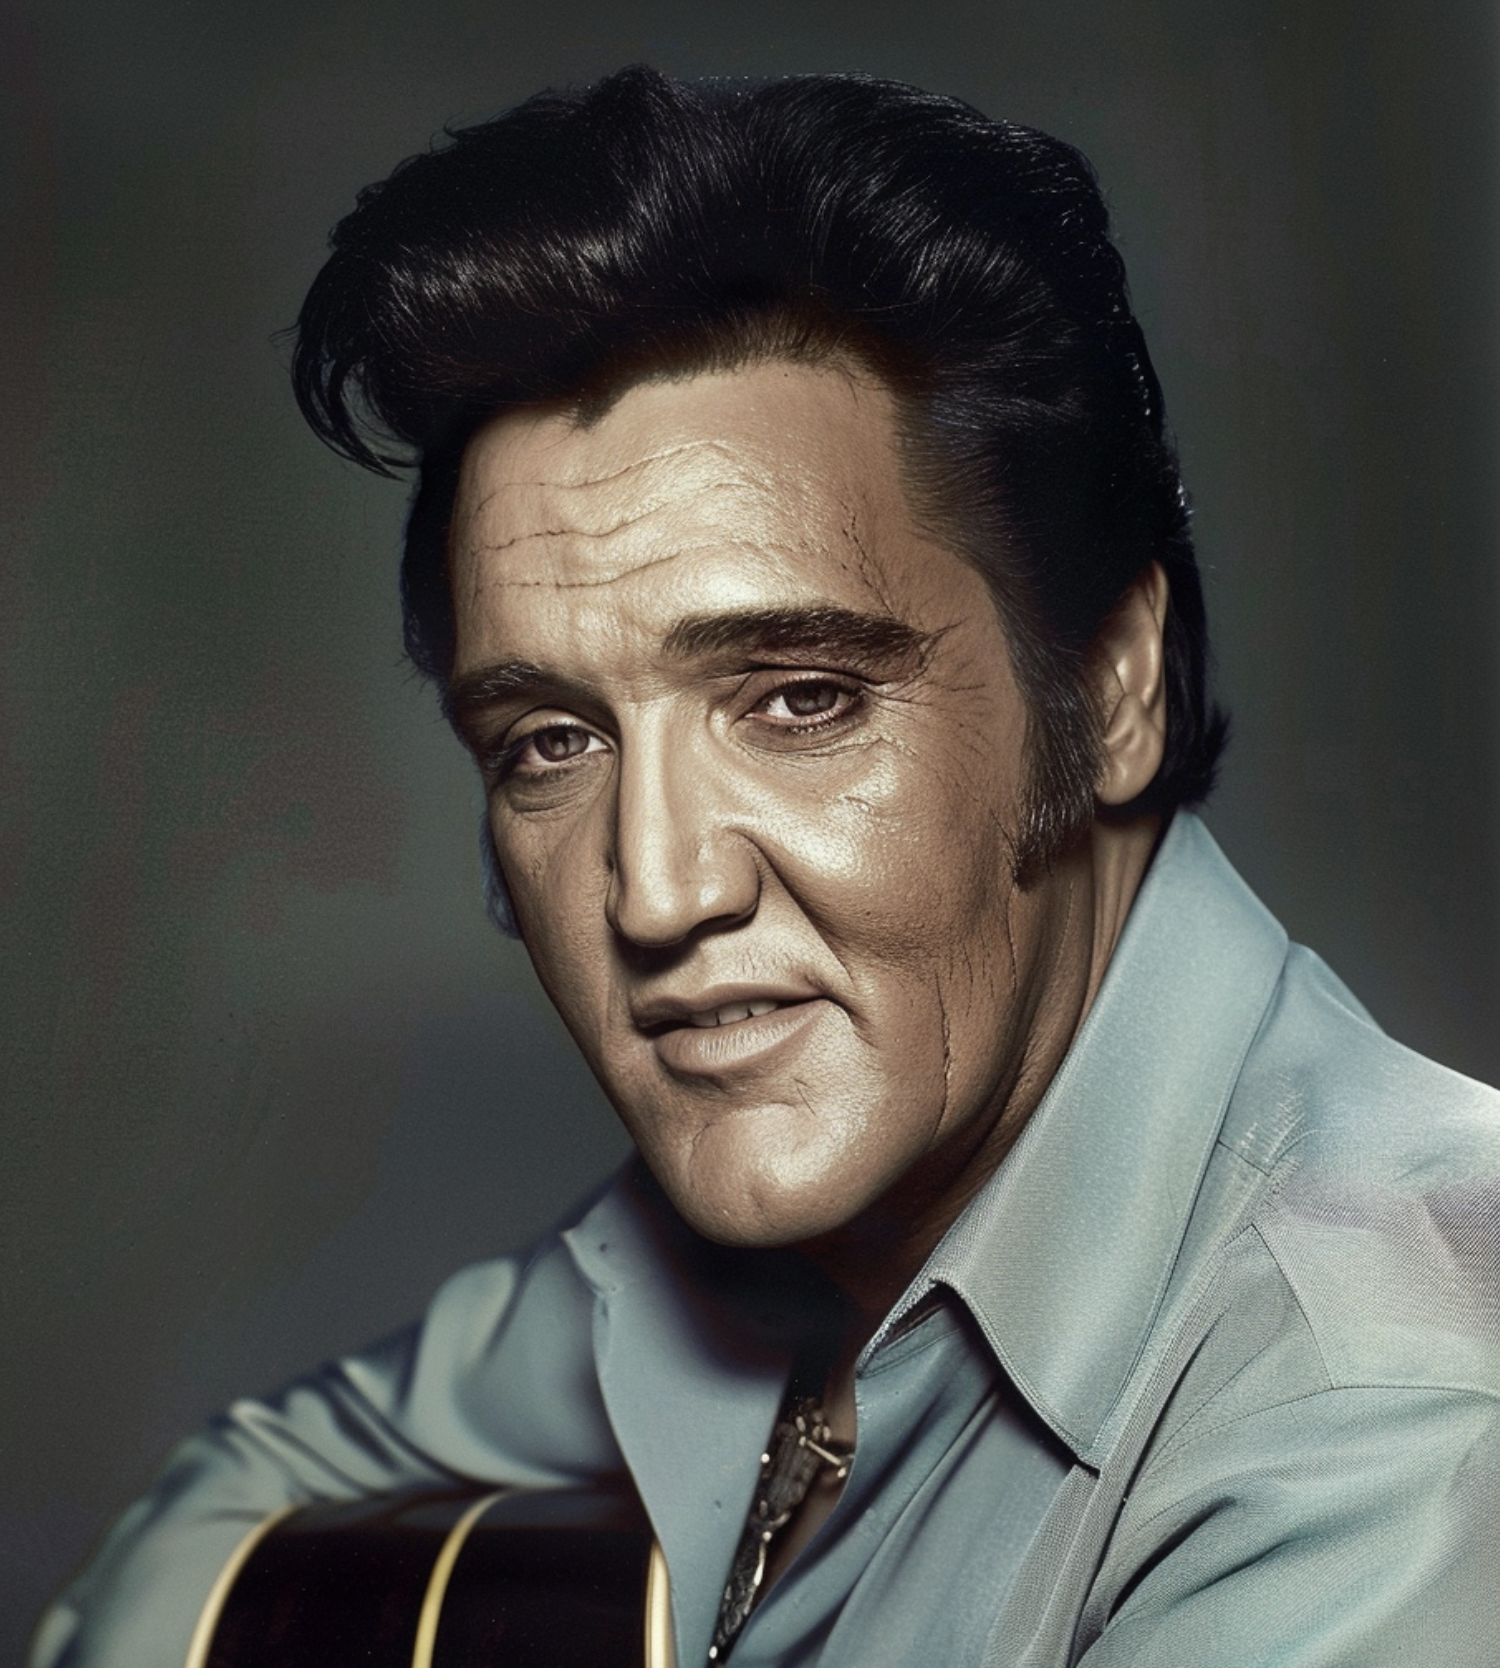 Image IA d'Elvis Presley dans sa vieillesse | Source : Midjourney